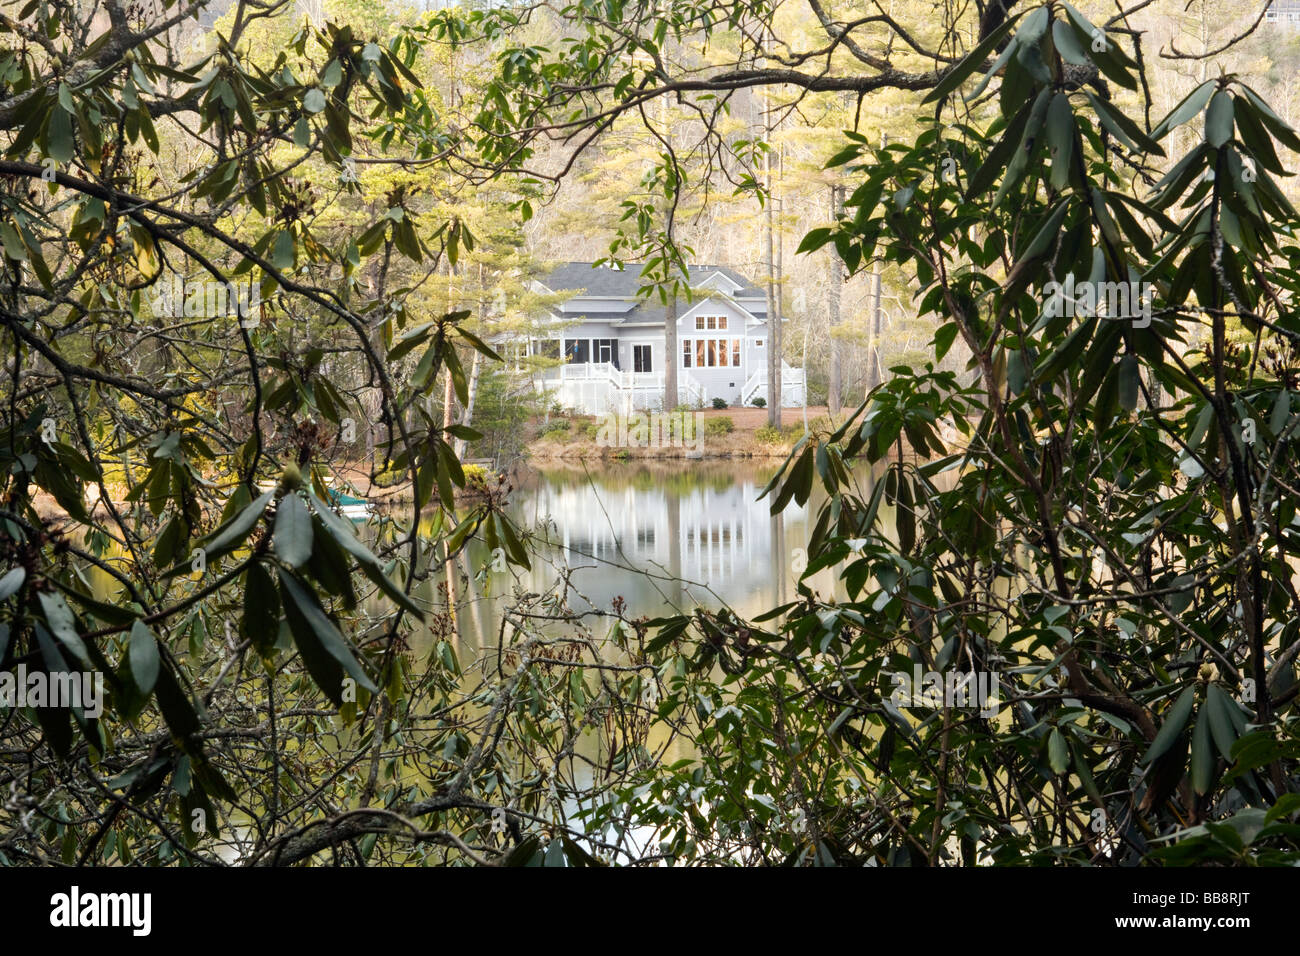 Maison du lac à travers les arbres - Brevard, Caroline du Nord Banque D'Images